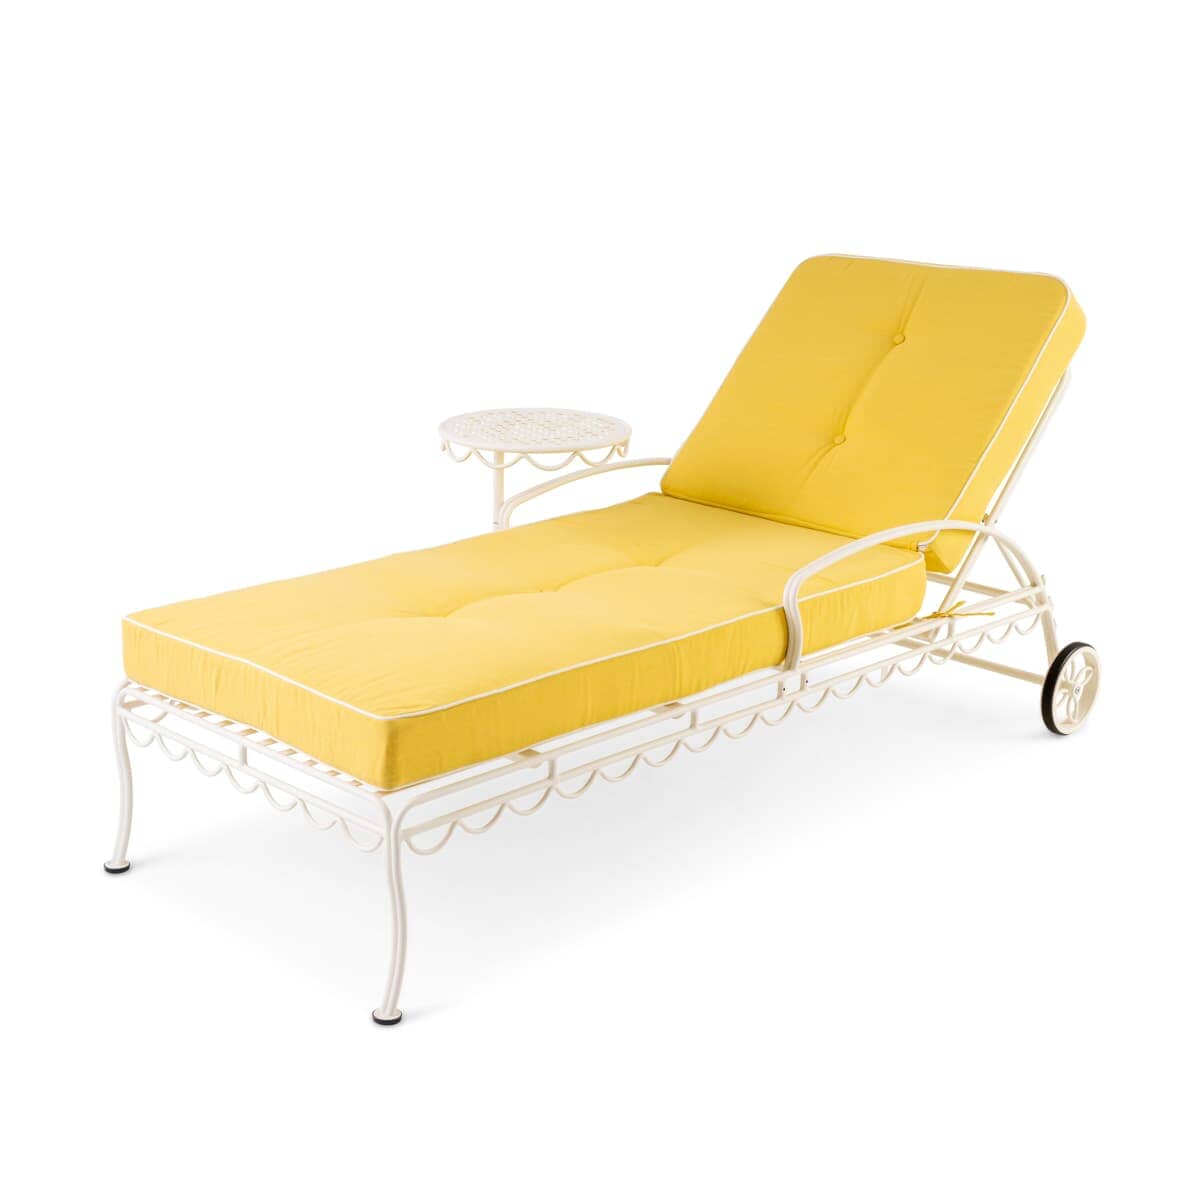 The Al Fresco Sun Lounger Cushion - Rivie Mimosa Al Fresco Sun Lounger Cushion Business & Pleasure Co Aus 